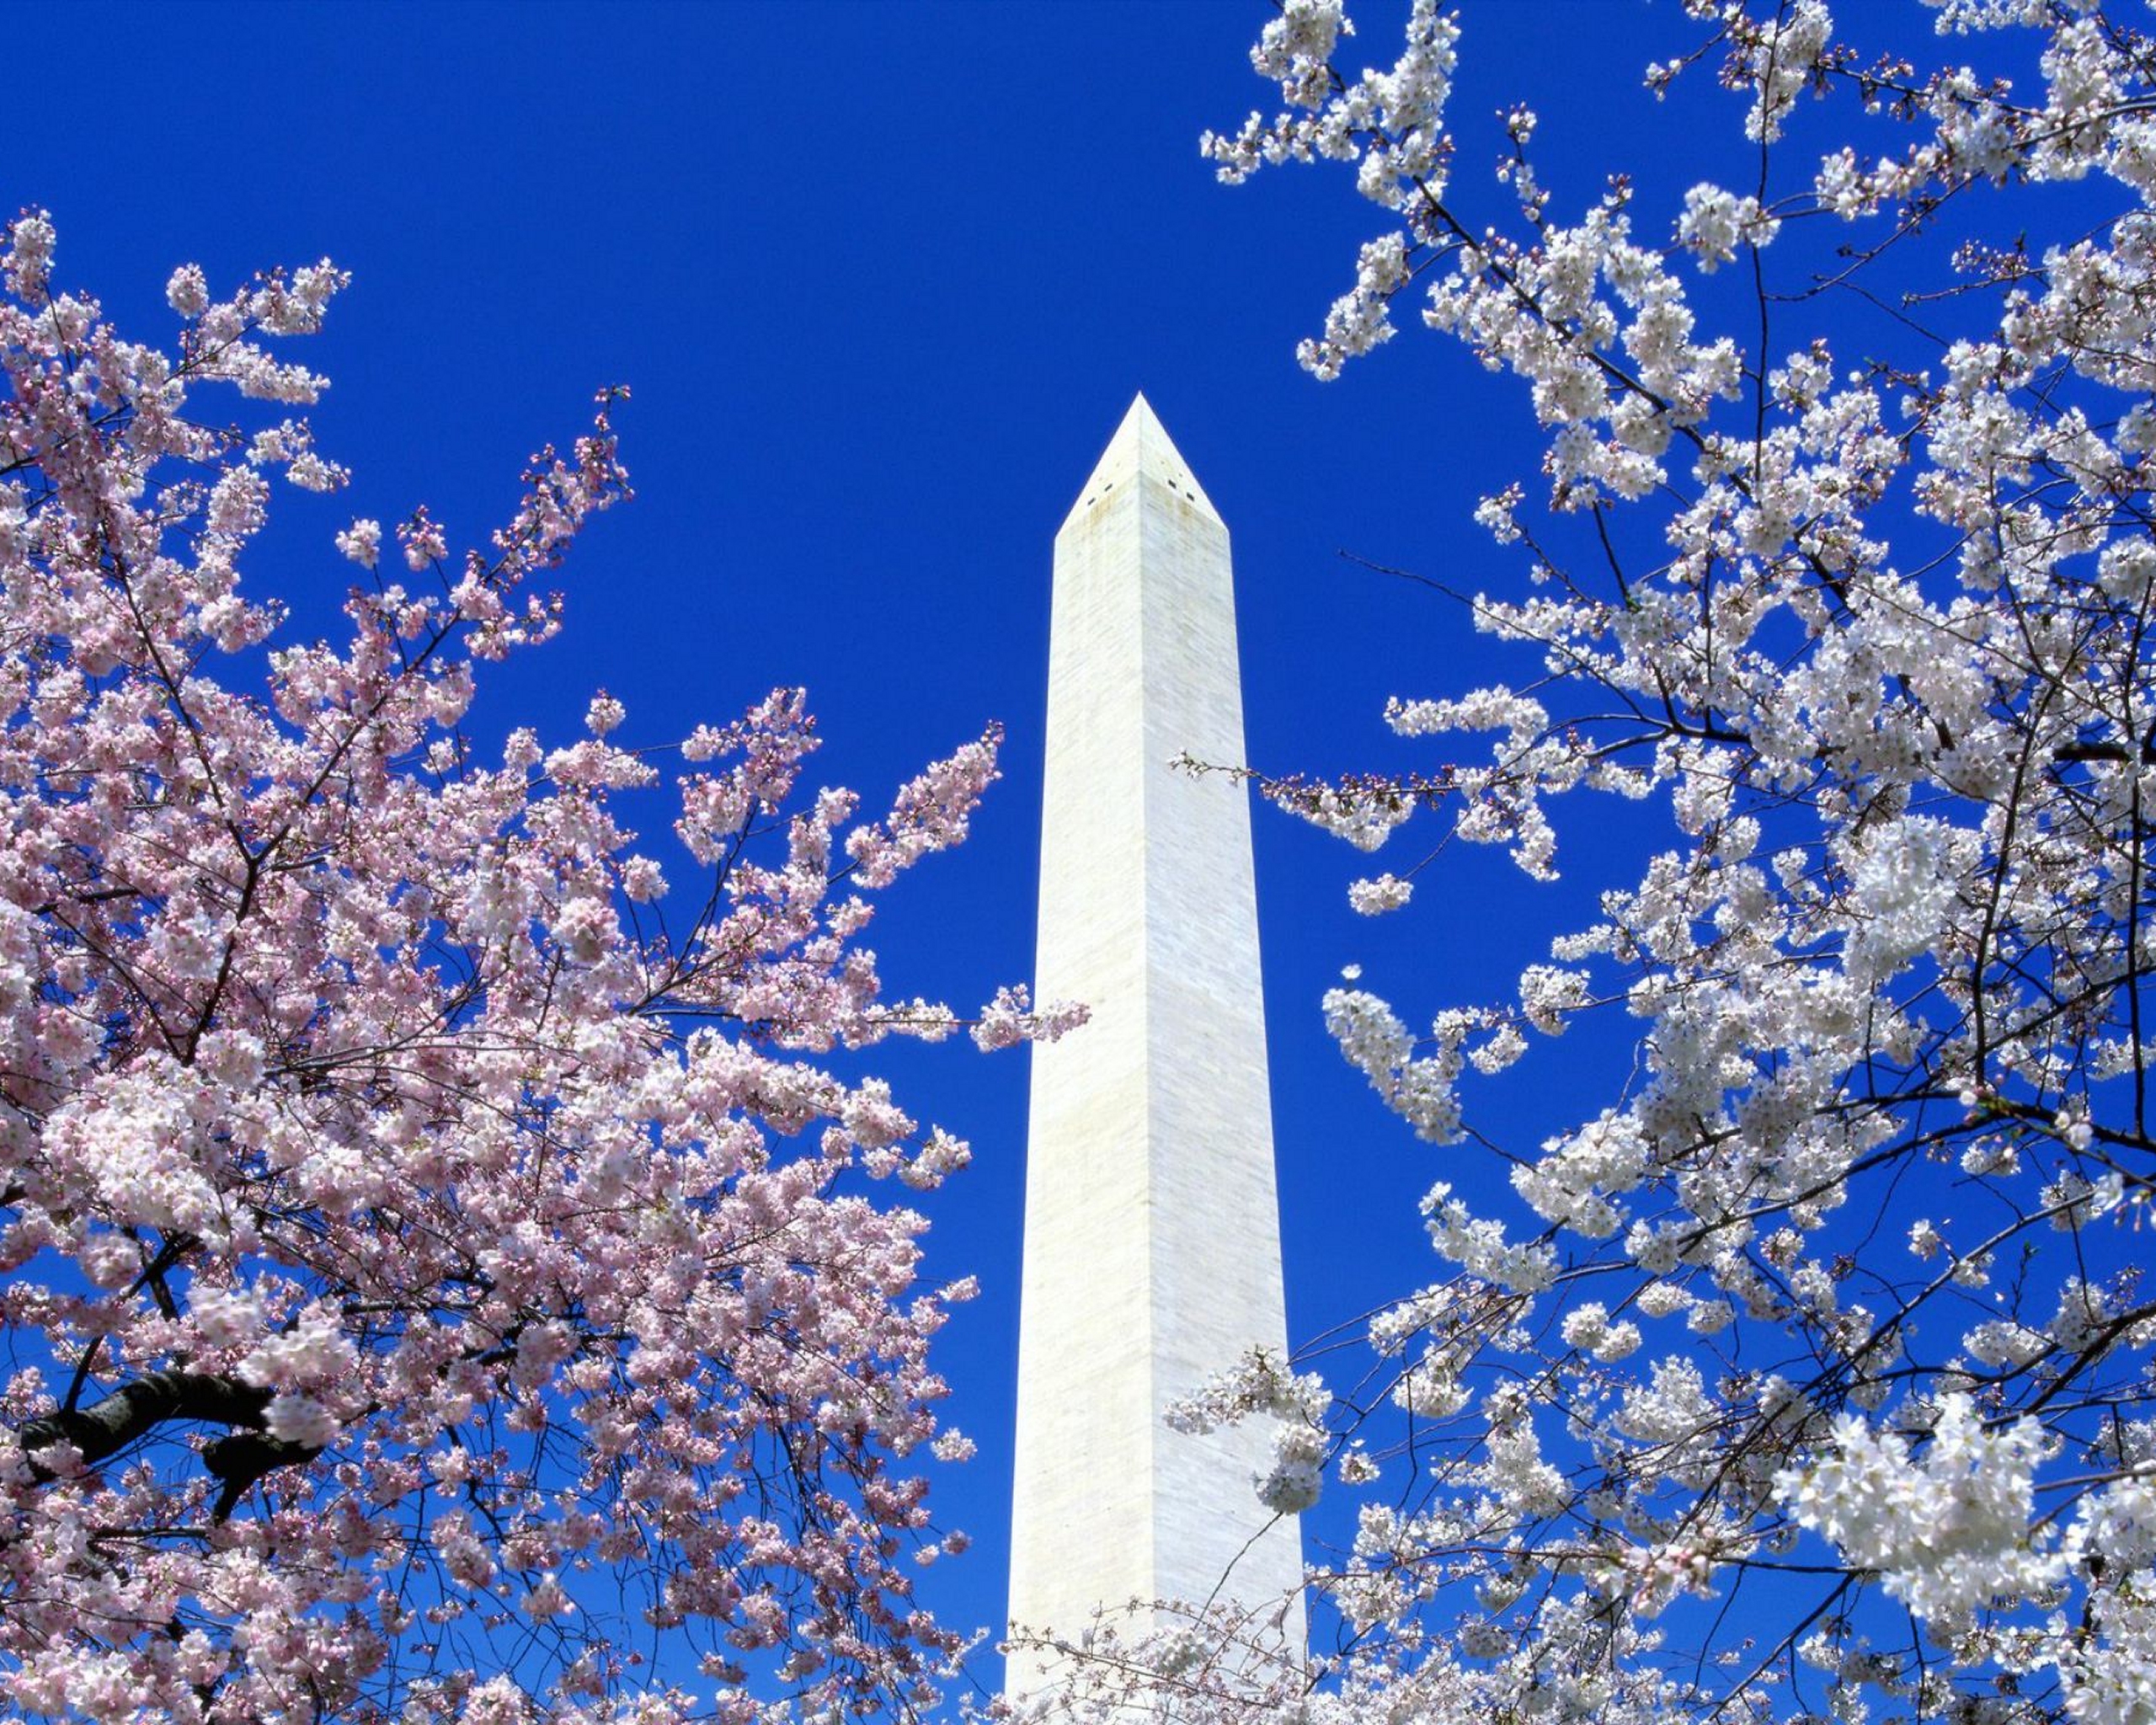 Washington Monument, Washington DC, 5:4